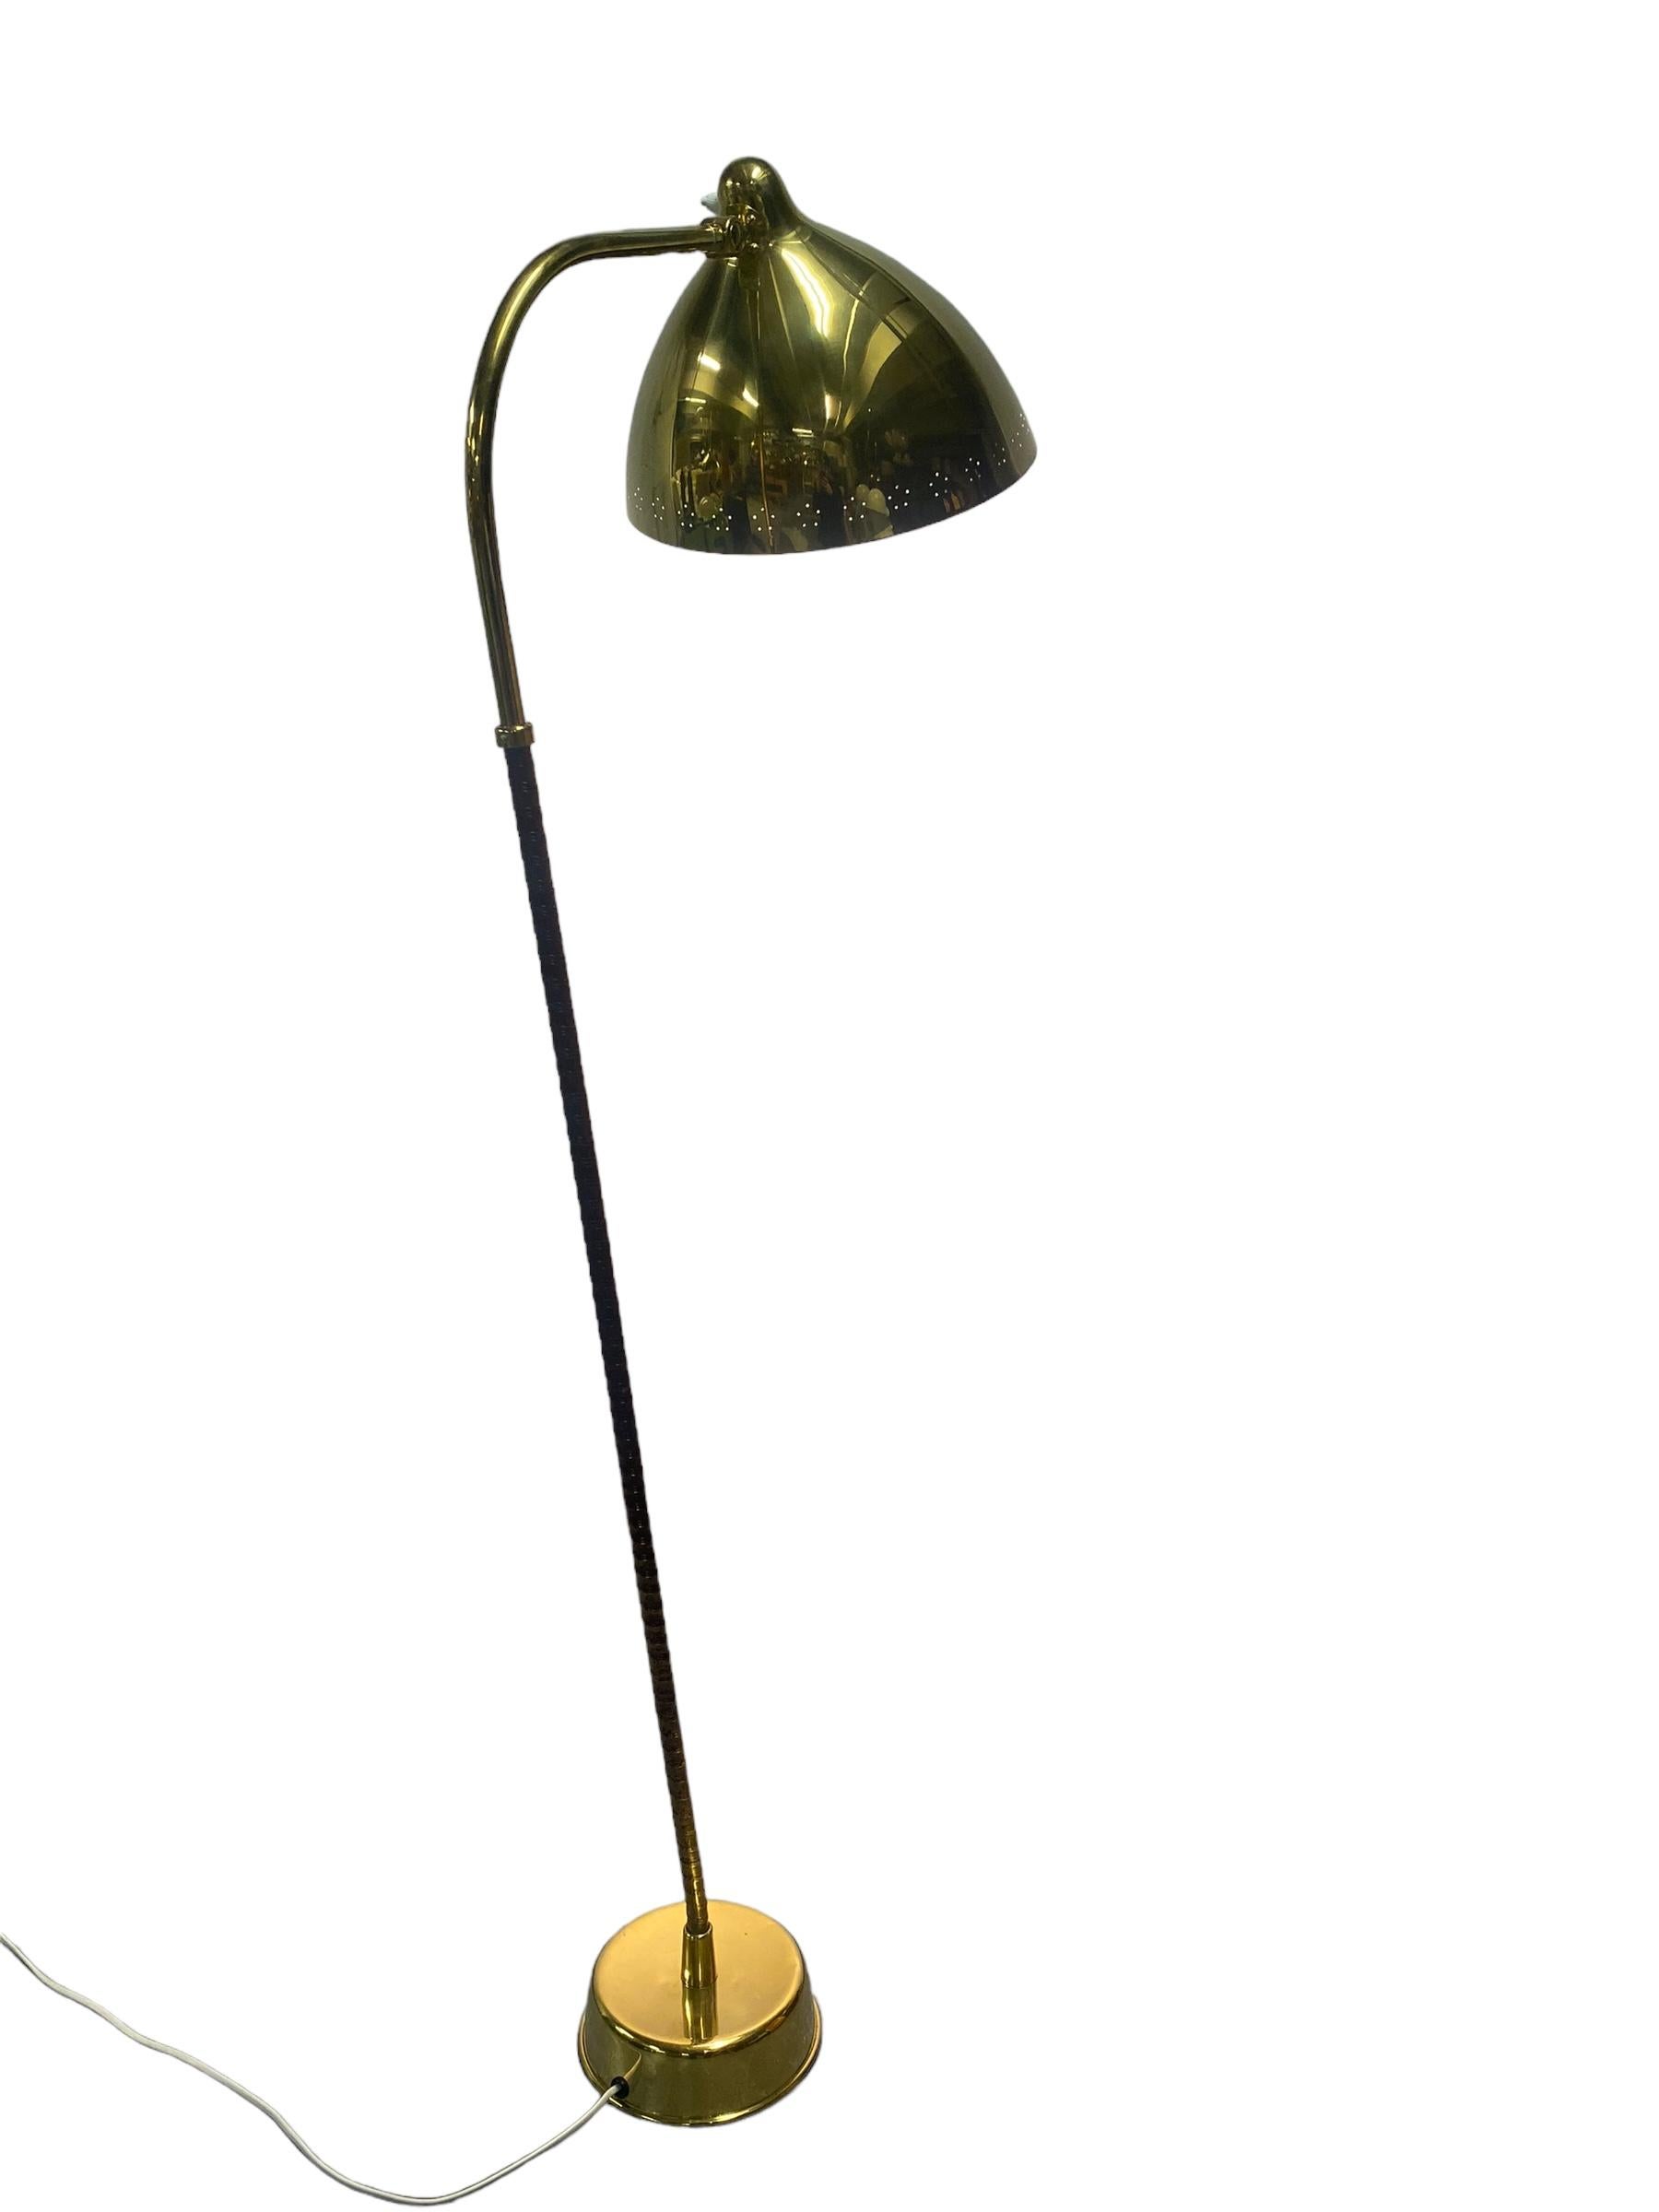 Eine schöne und originelle Stehlampe aus den 1950er Jahren, mit einem vollen Messingschirm. Entworfen von Lisa-Johansson pape und hergestellt von Orno. Vollständiger Originalzustand mit schöner Patina auf dem Schaft und den Messingteilen. Die